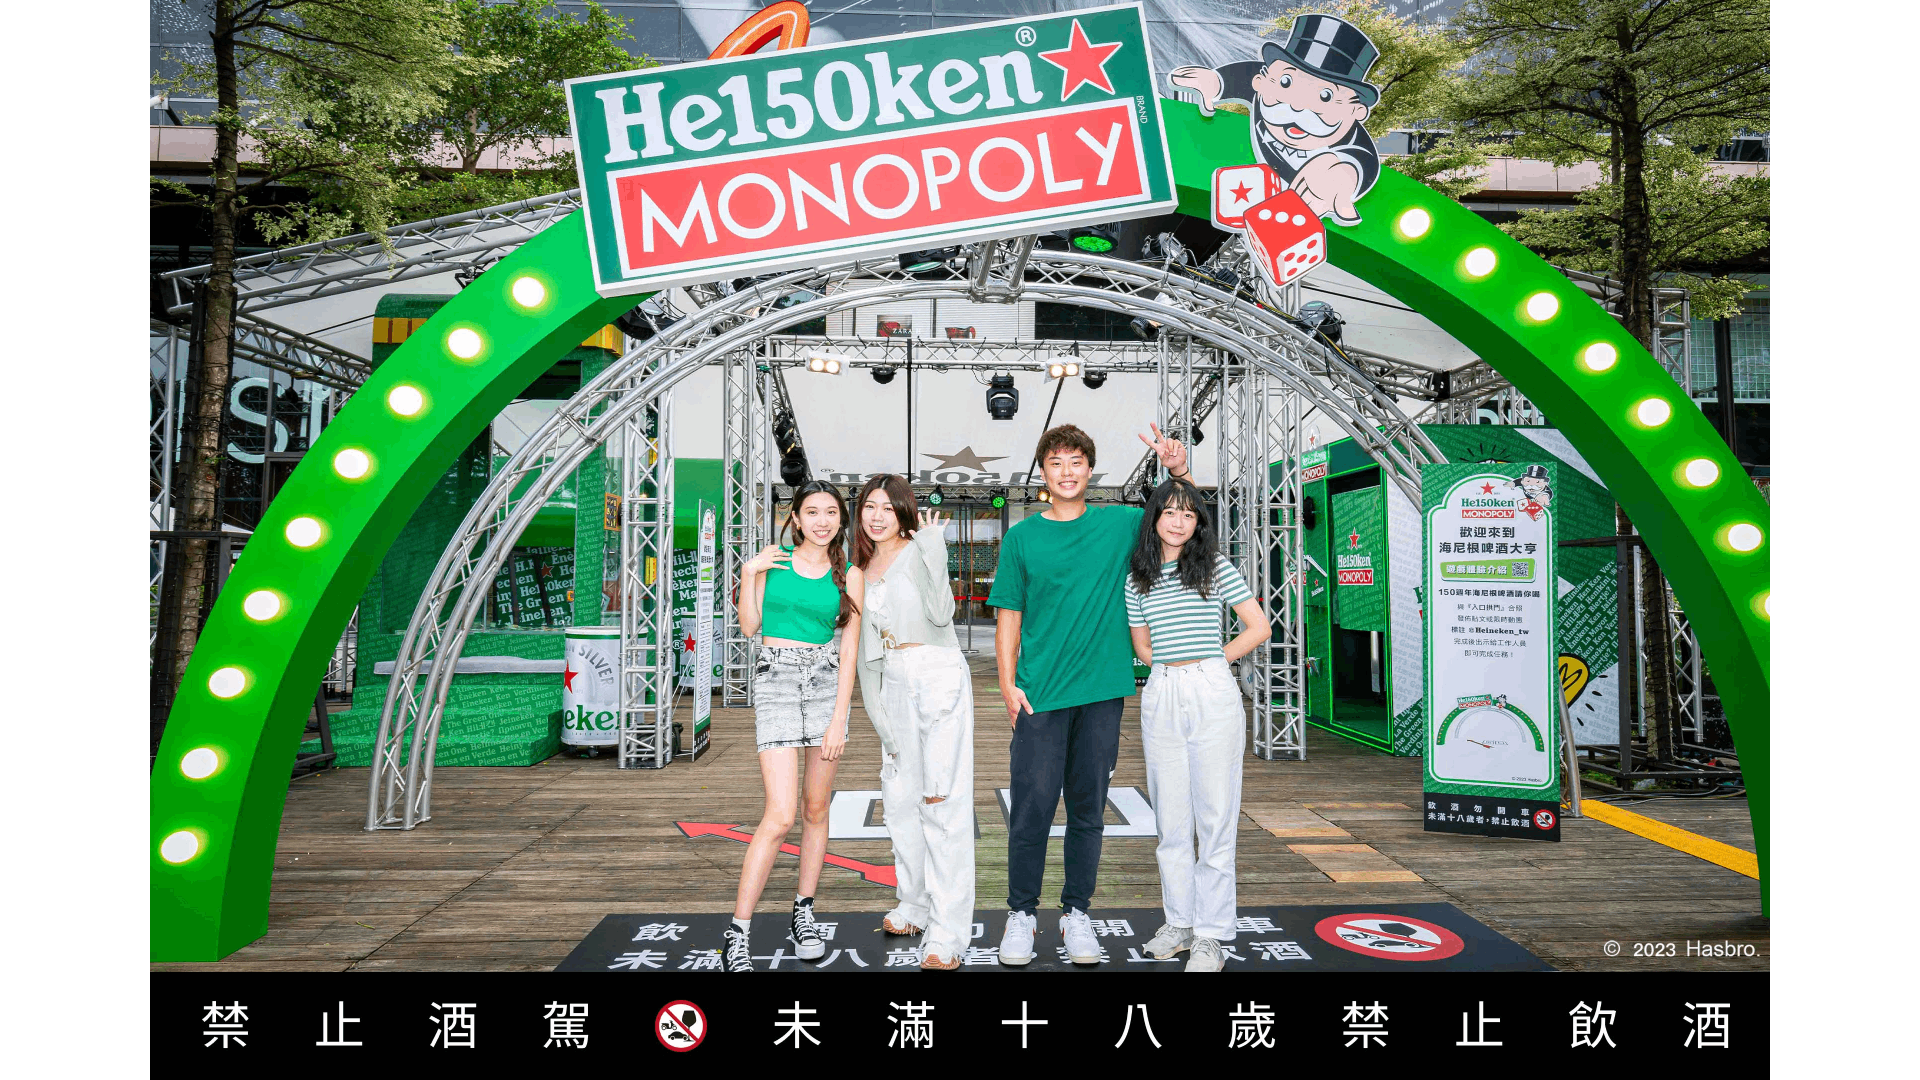 Monopoly entrance